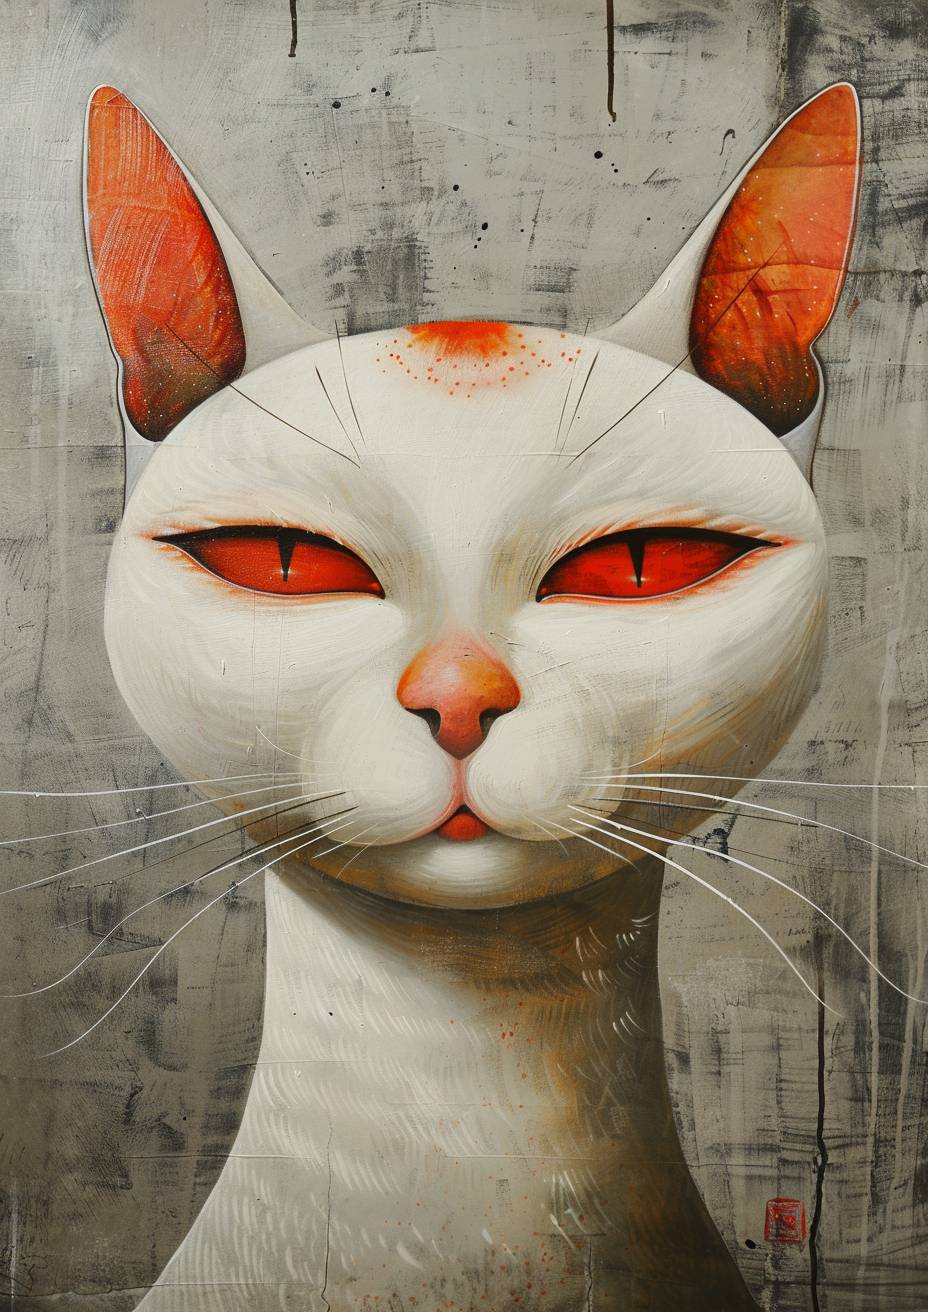 張曉剛のスタイルで描かれたネコ科動物の絵